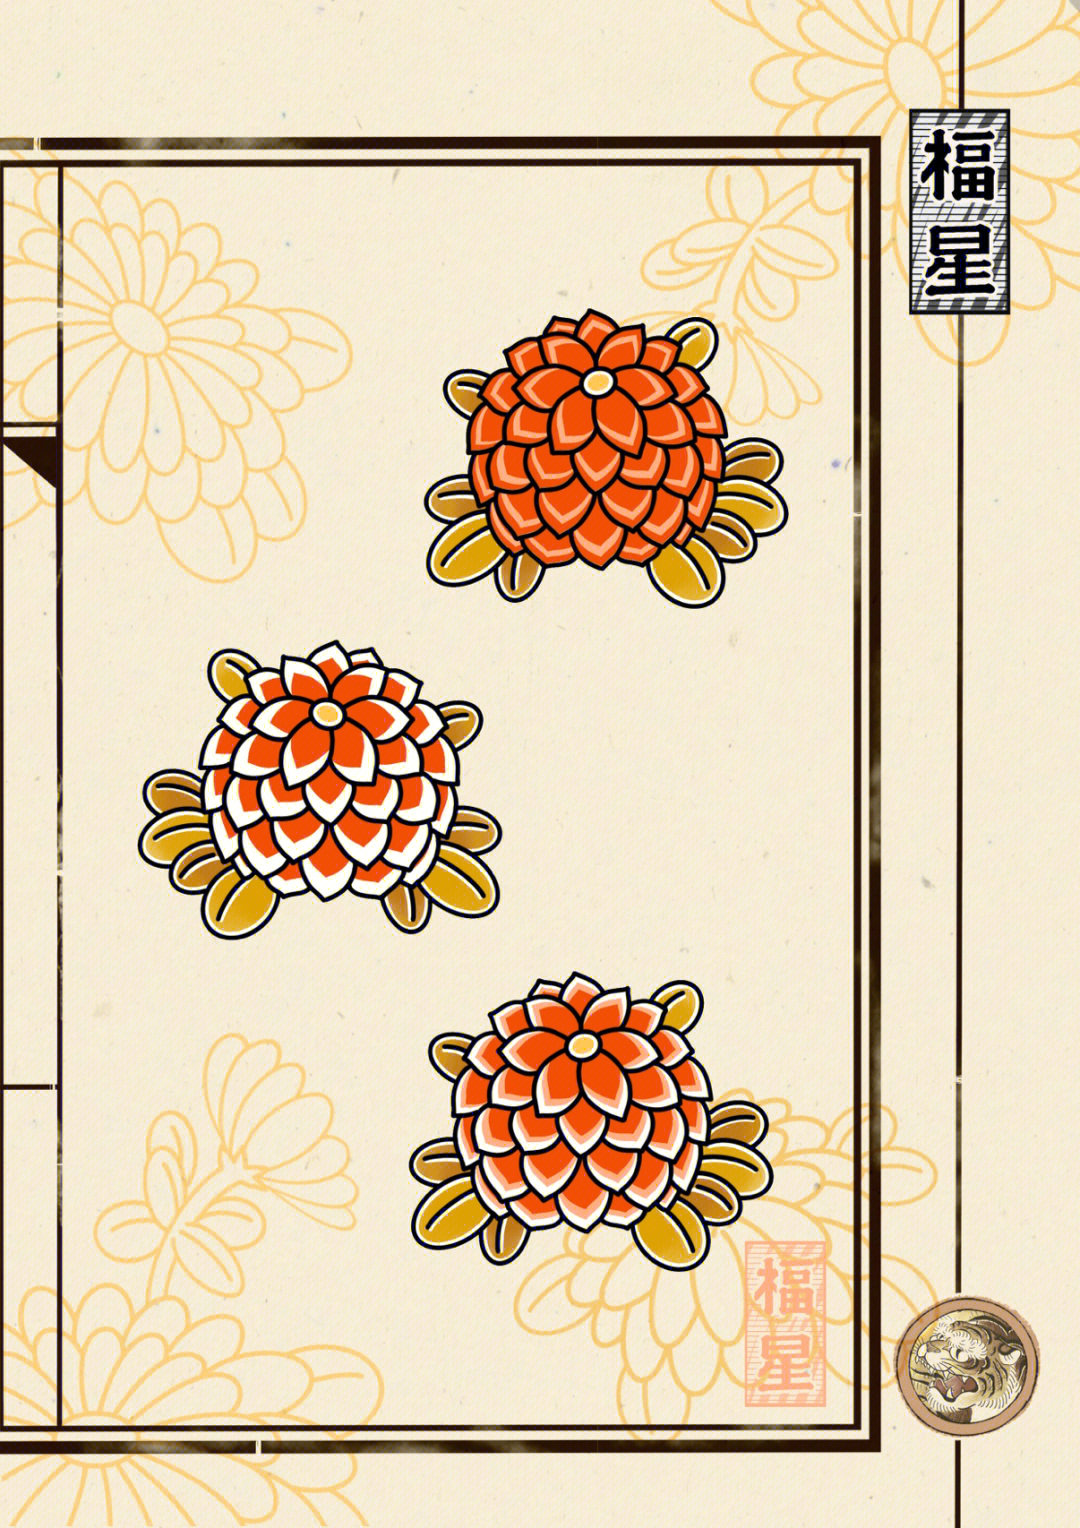 日式老传统菊花纹身手稿设计